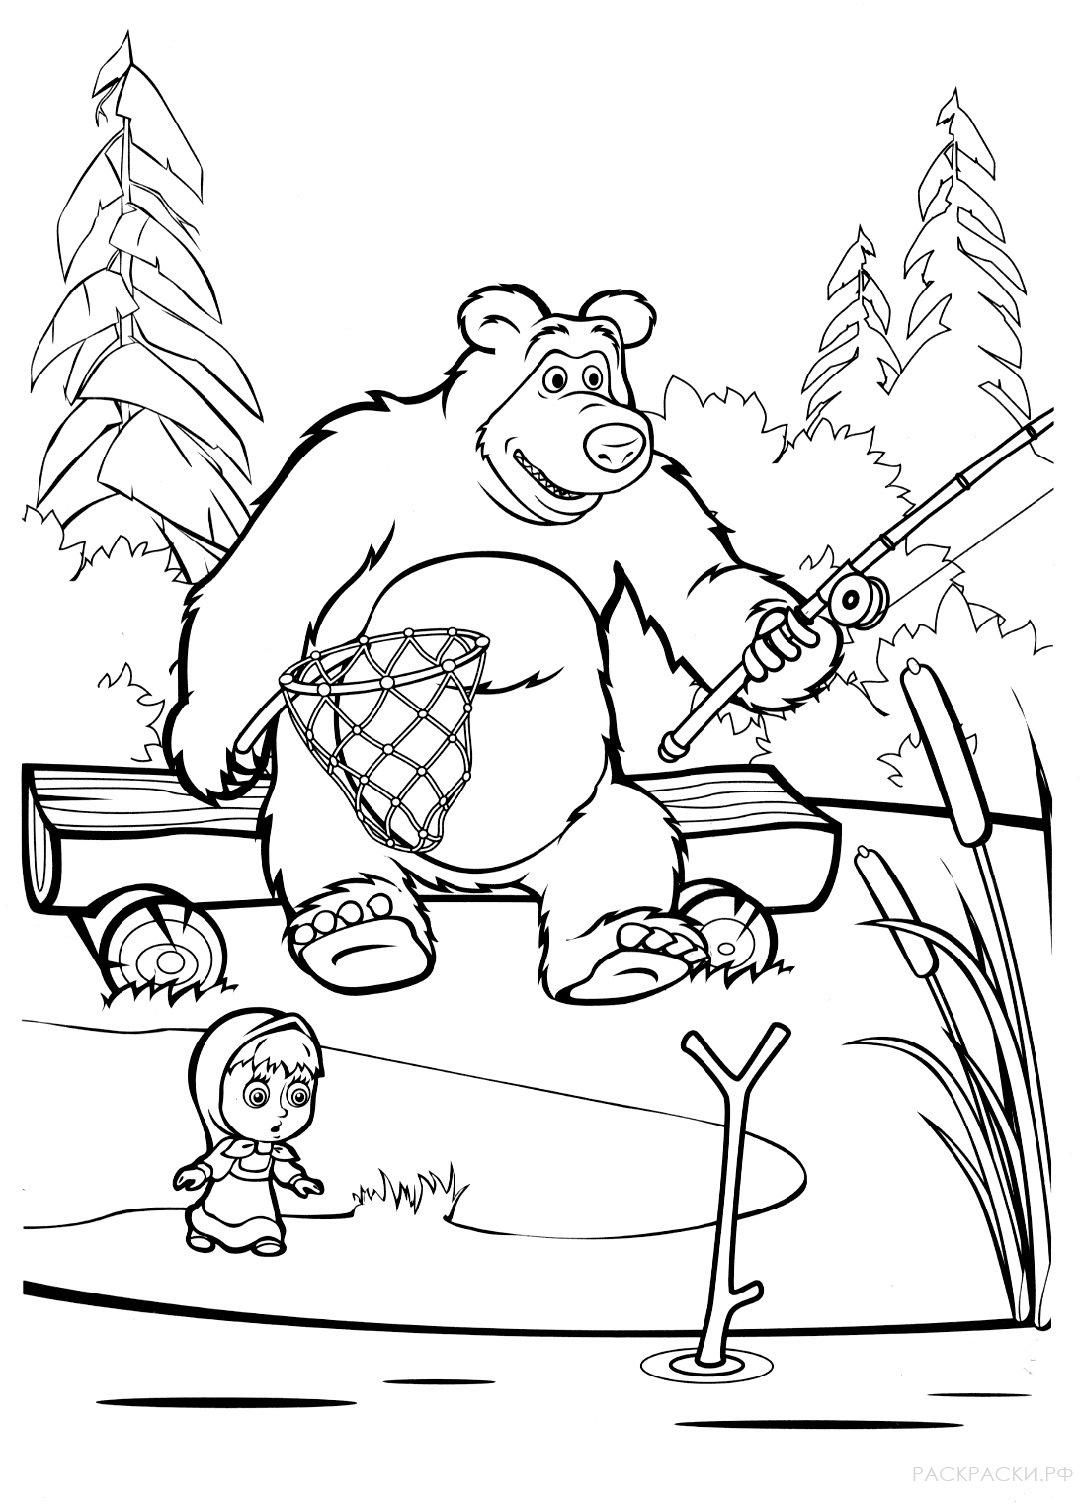 Раскраска Маша и Медведь на рыбалке с удочкой и сочком